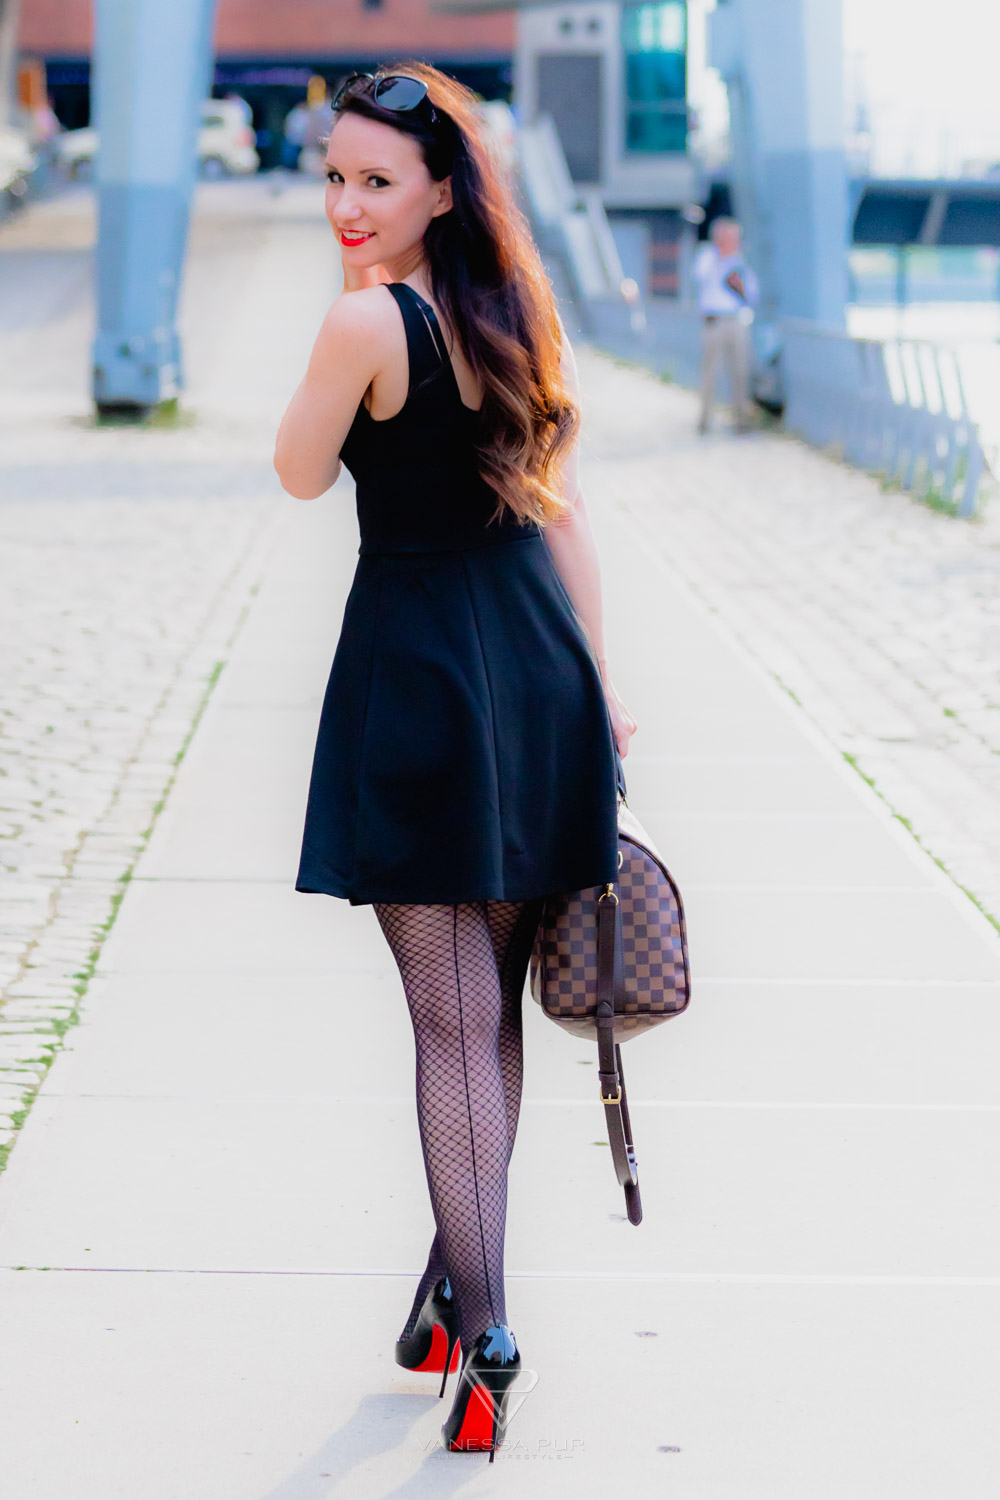 Vanessa Pur fishnet tights, high heels, mini dress